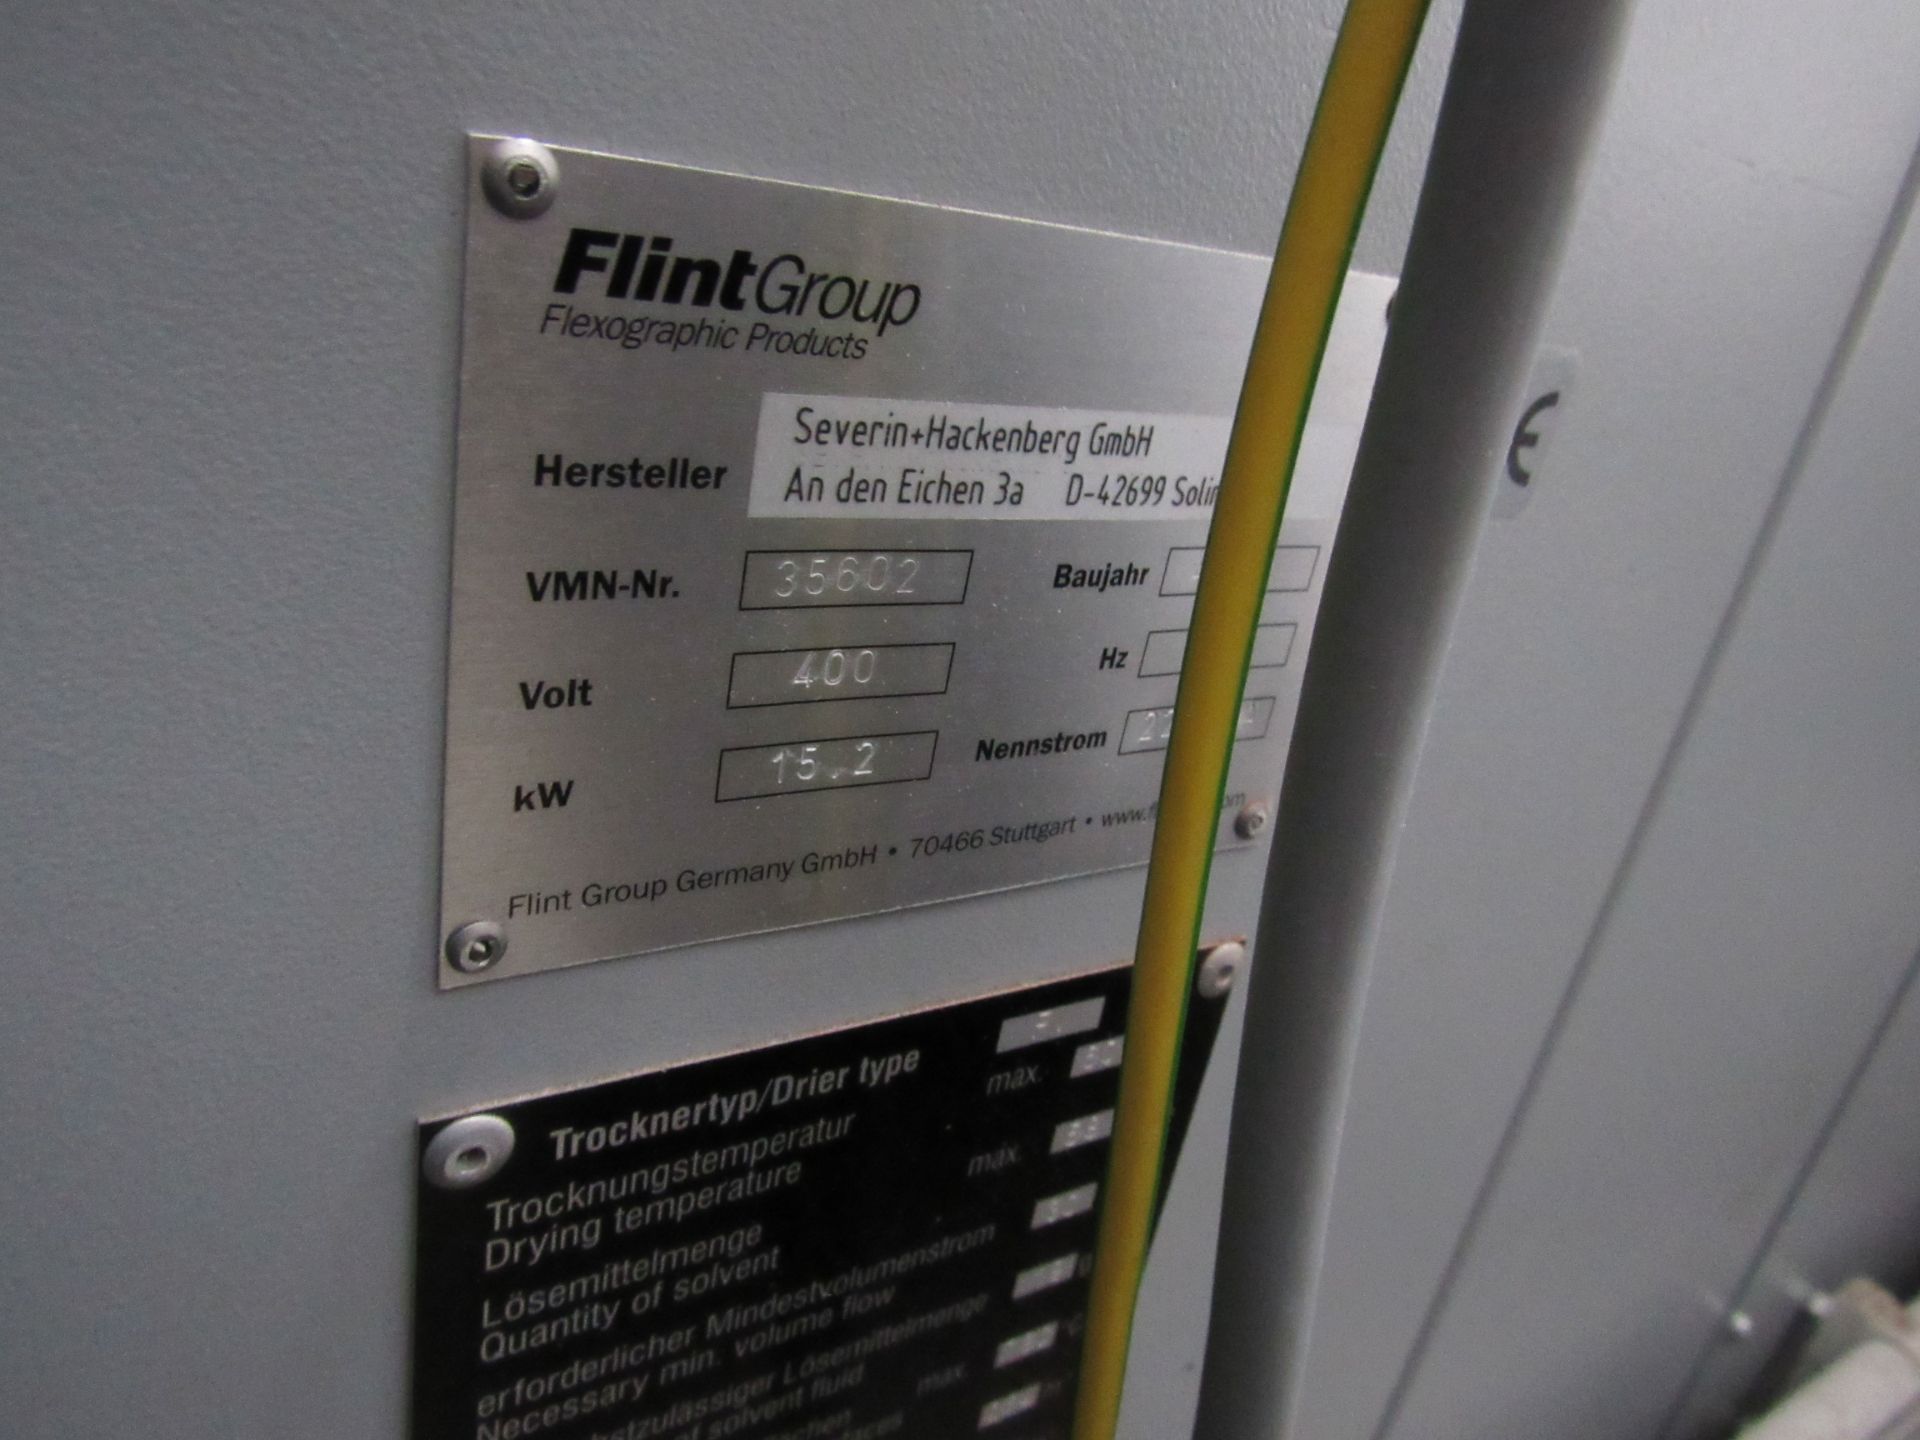 Flint Group FV 6 Drawer Drier, Serial Number 35602 - Image 3 of 4